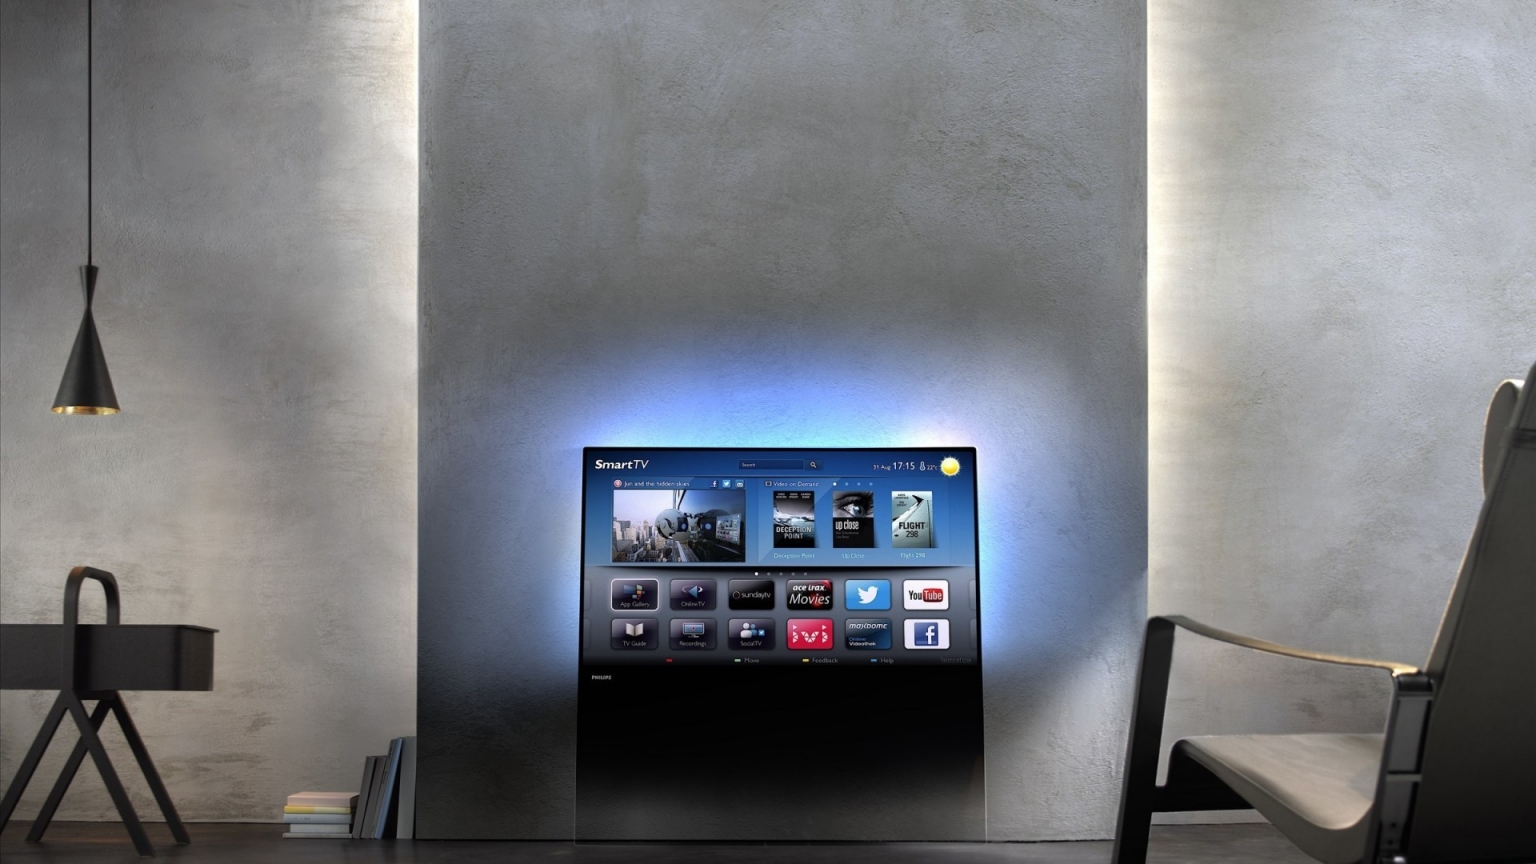 New Philips DesignLine TV for 1536 x 864 HDTV resolution